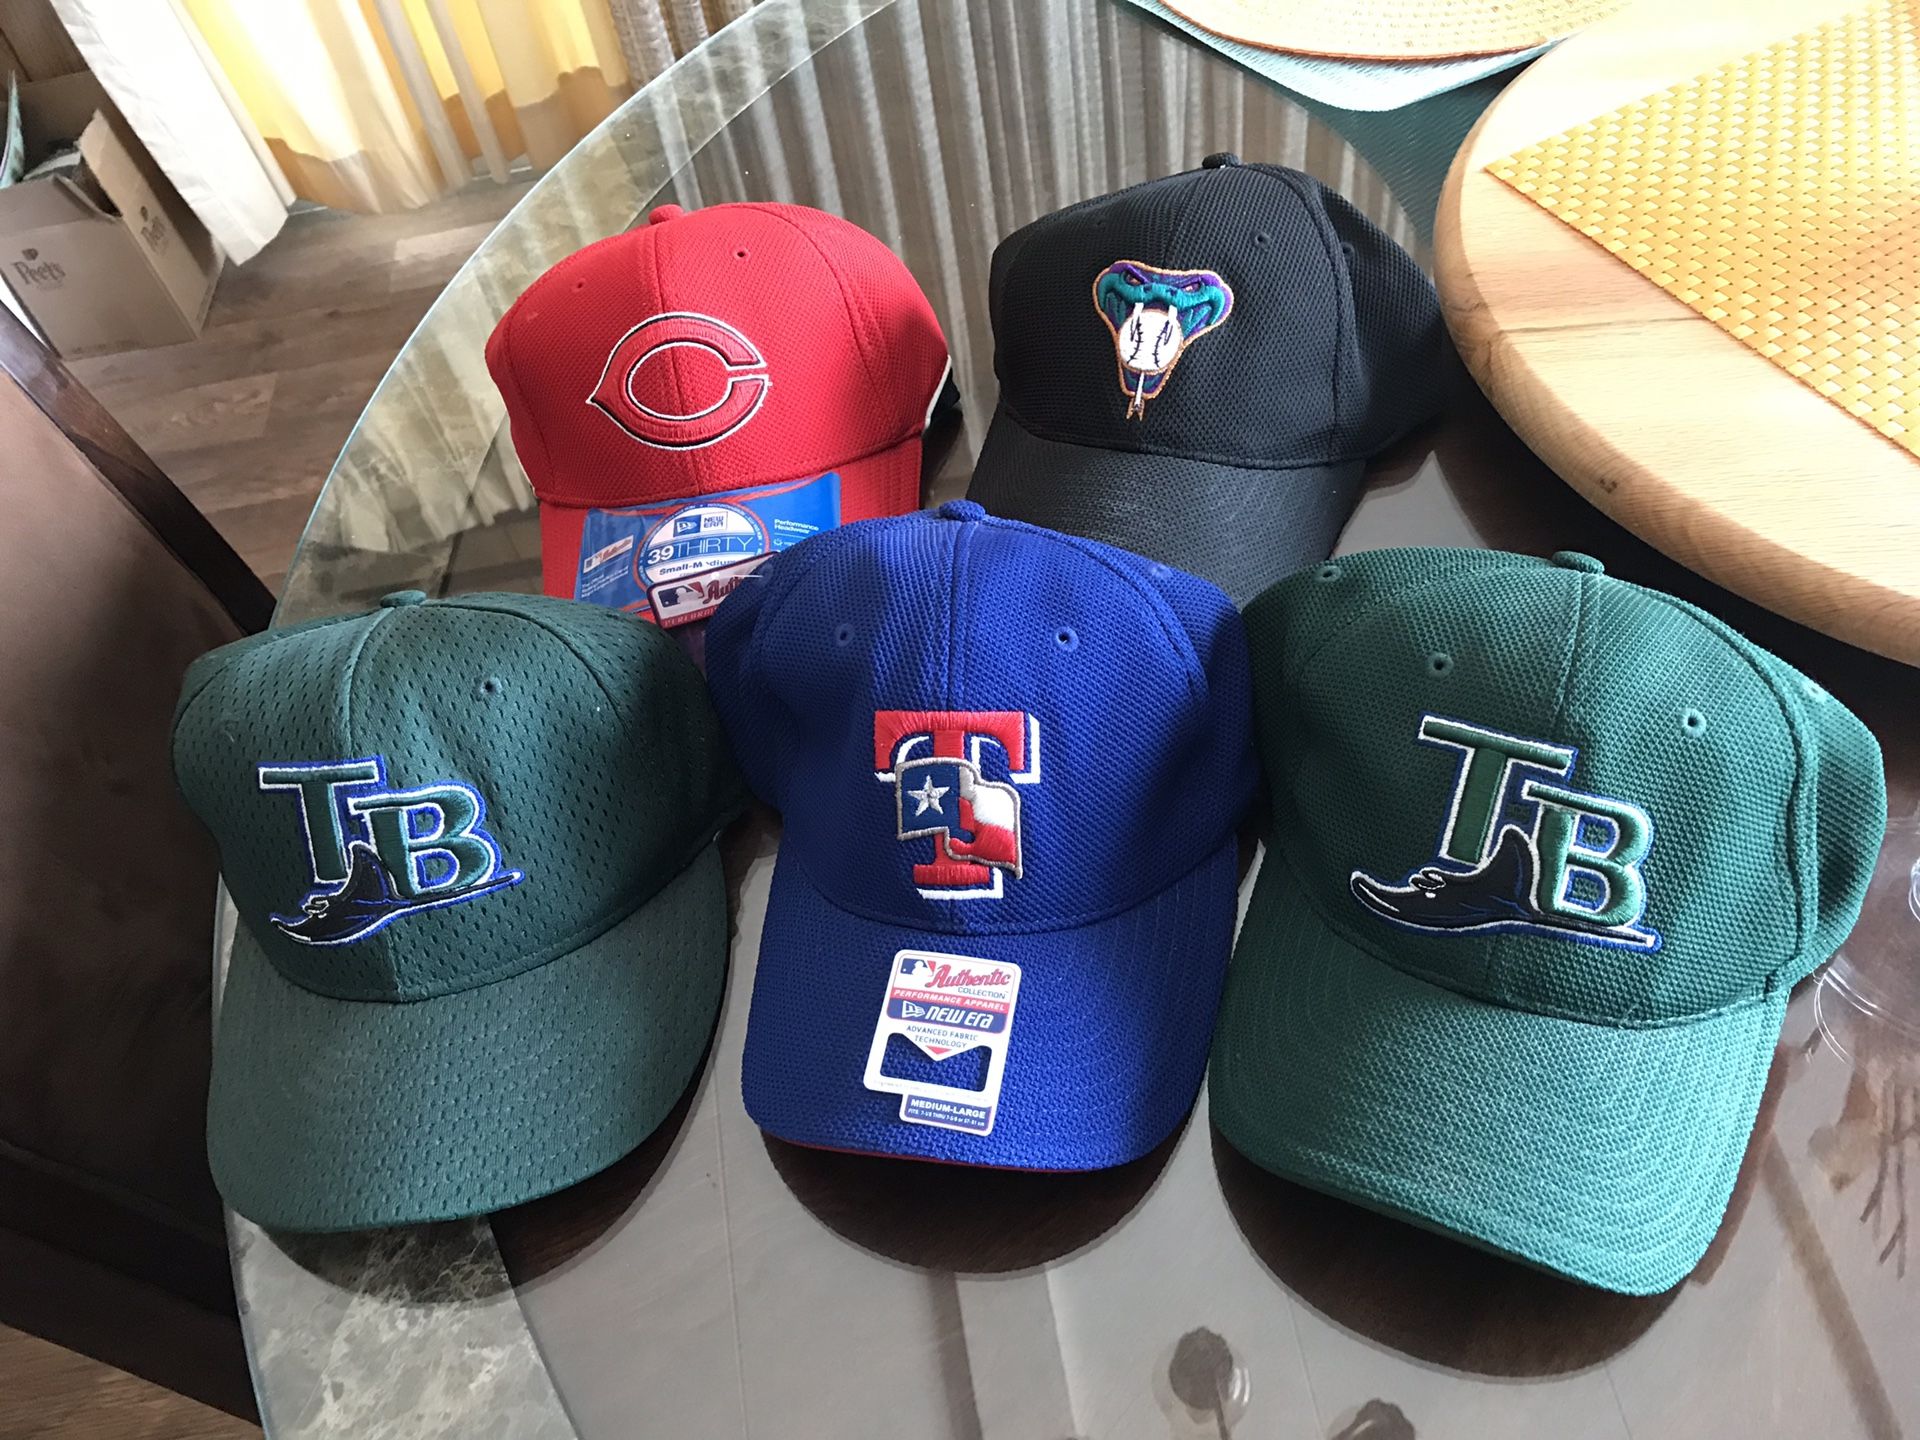 Baseball caps and shirts